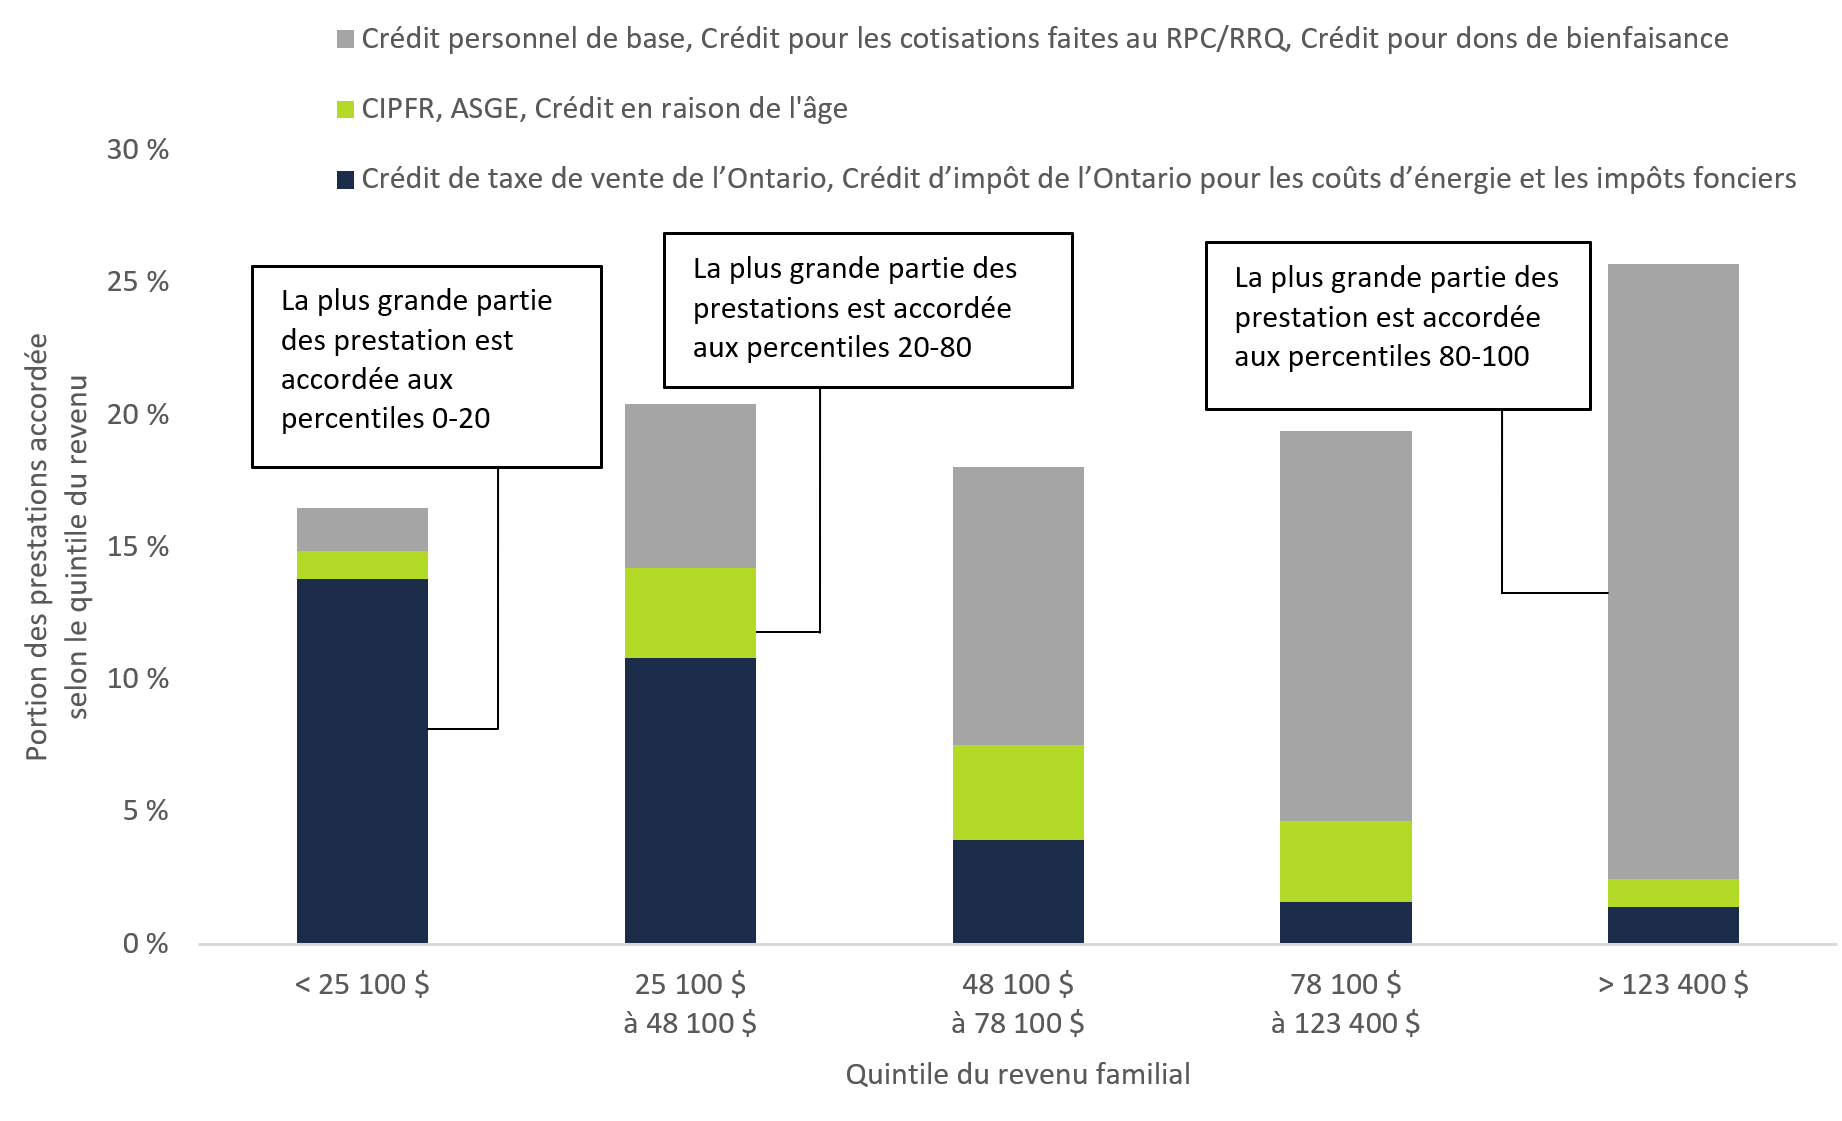 Figure 5 4 : Distribution des prestations découlant des crédits d'impôt selon le groupe de revenu, 2019-2020